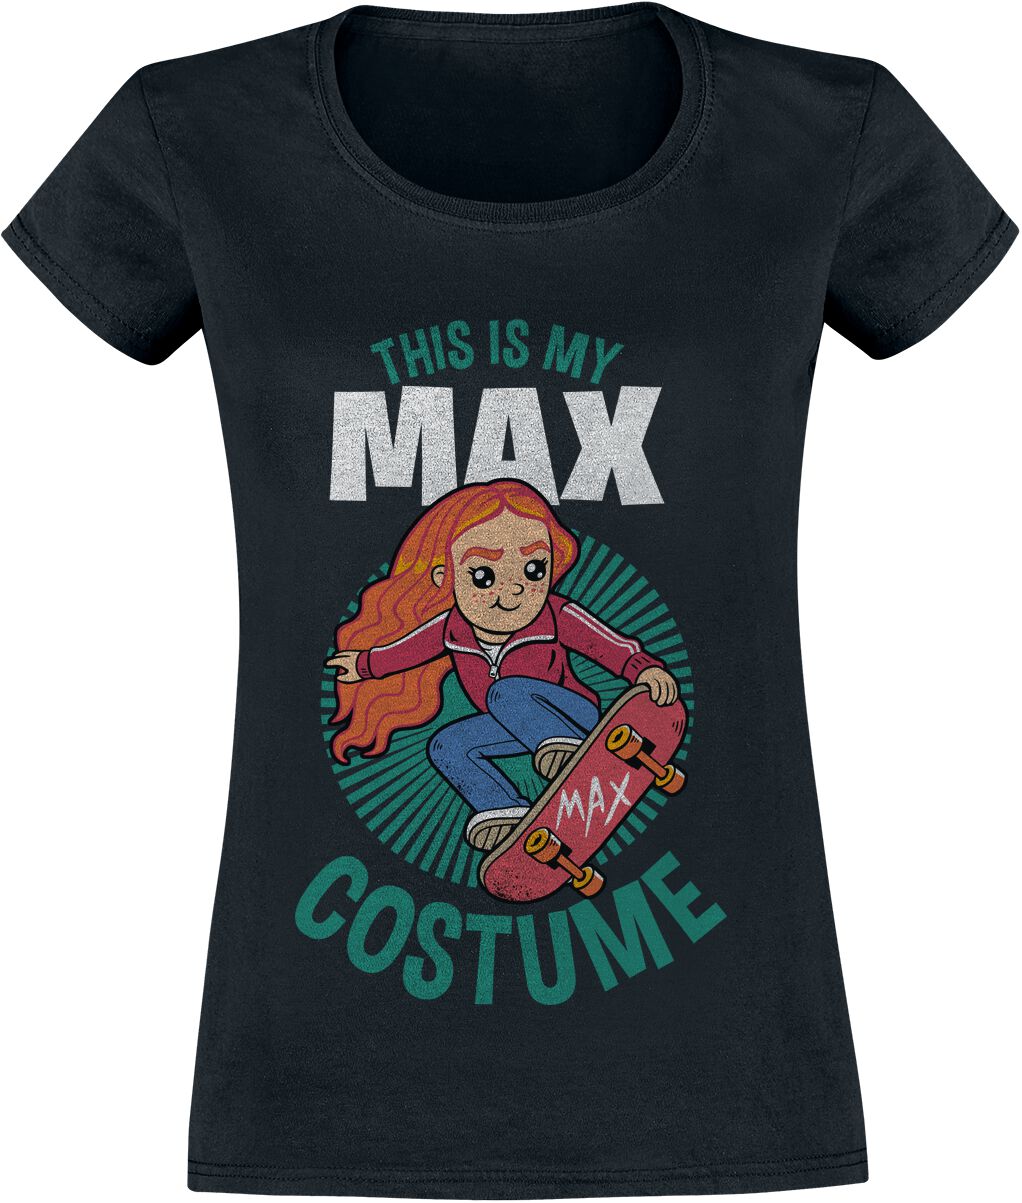 Paleis Doorbraak Tegenover Dit is mijn Max kostuum | Stranger Things T-shirt | Large